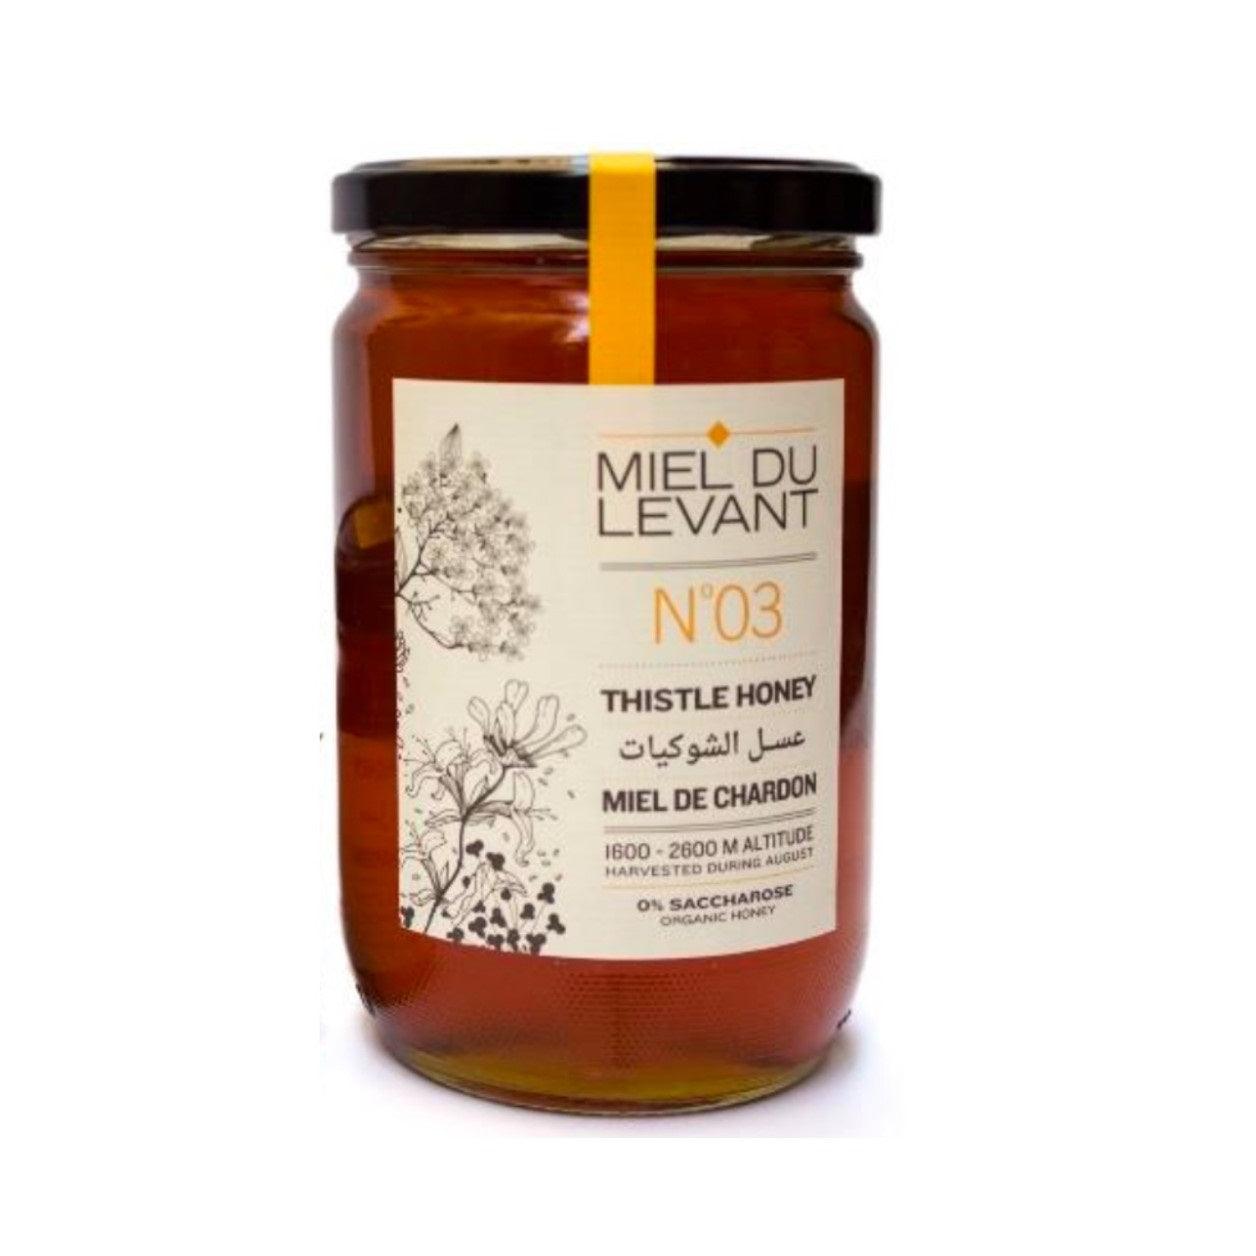 Miel Du Levant - N 03 Thistle Honey - ORAS OFFICIAL